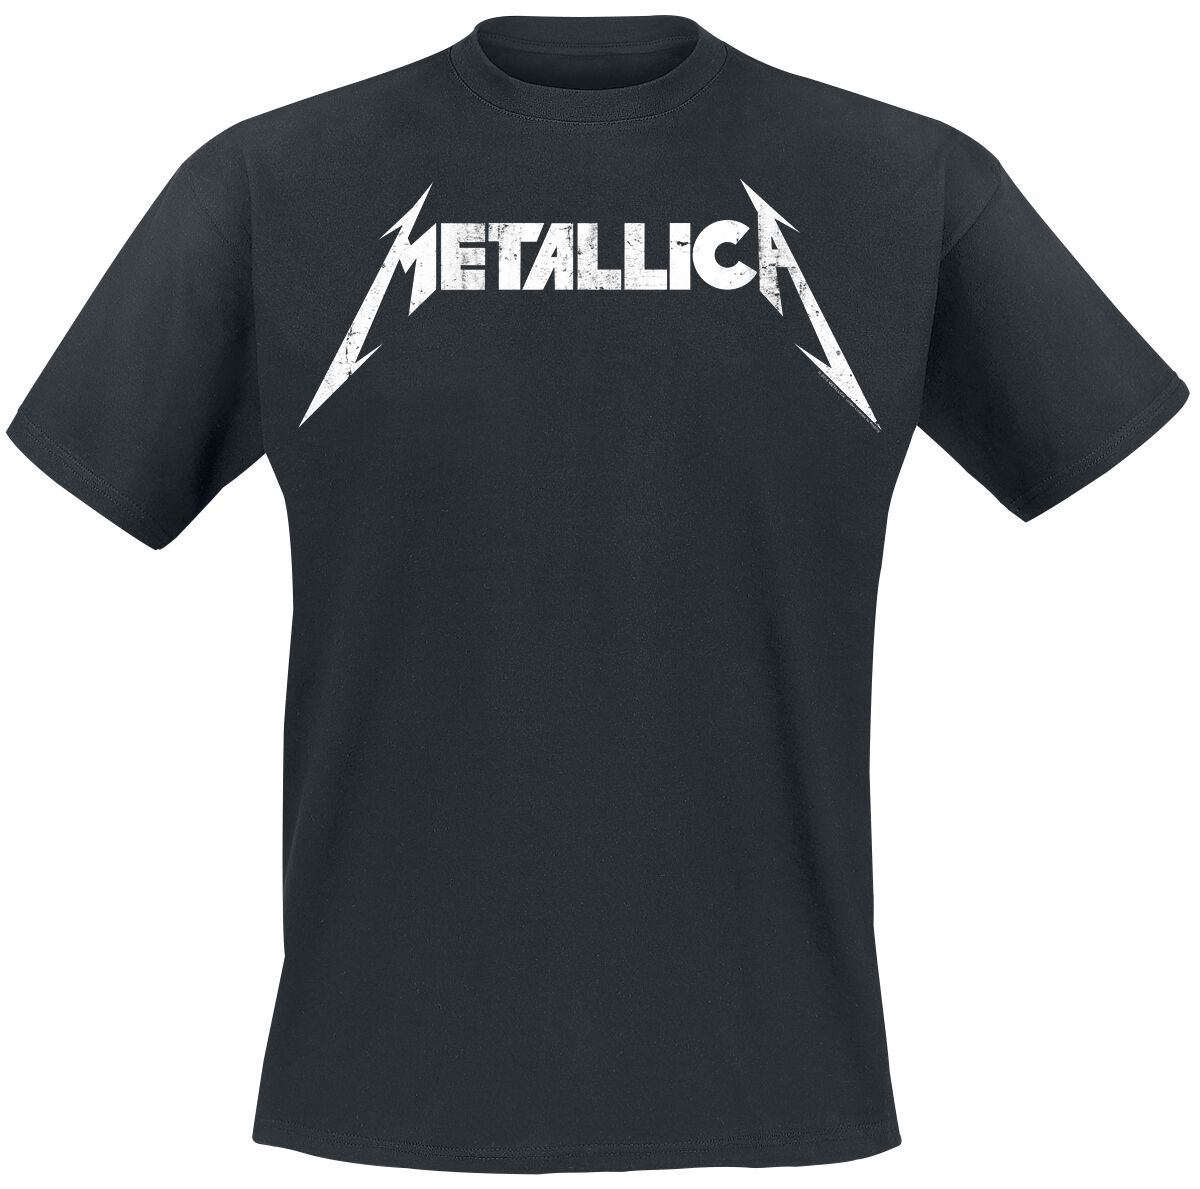 Metallica T-Shirt - Textured Logo - S bis 5XL - für Männer - Größe XL - schwarz  - Lizenziertes Merchandise!